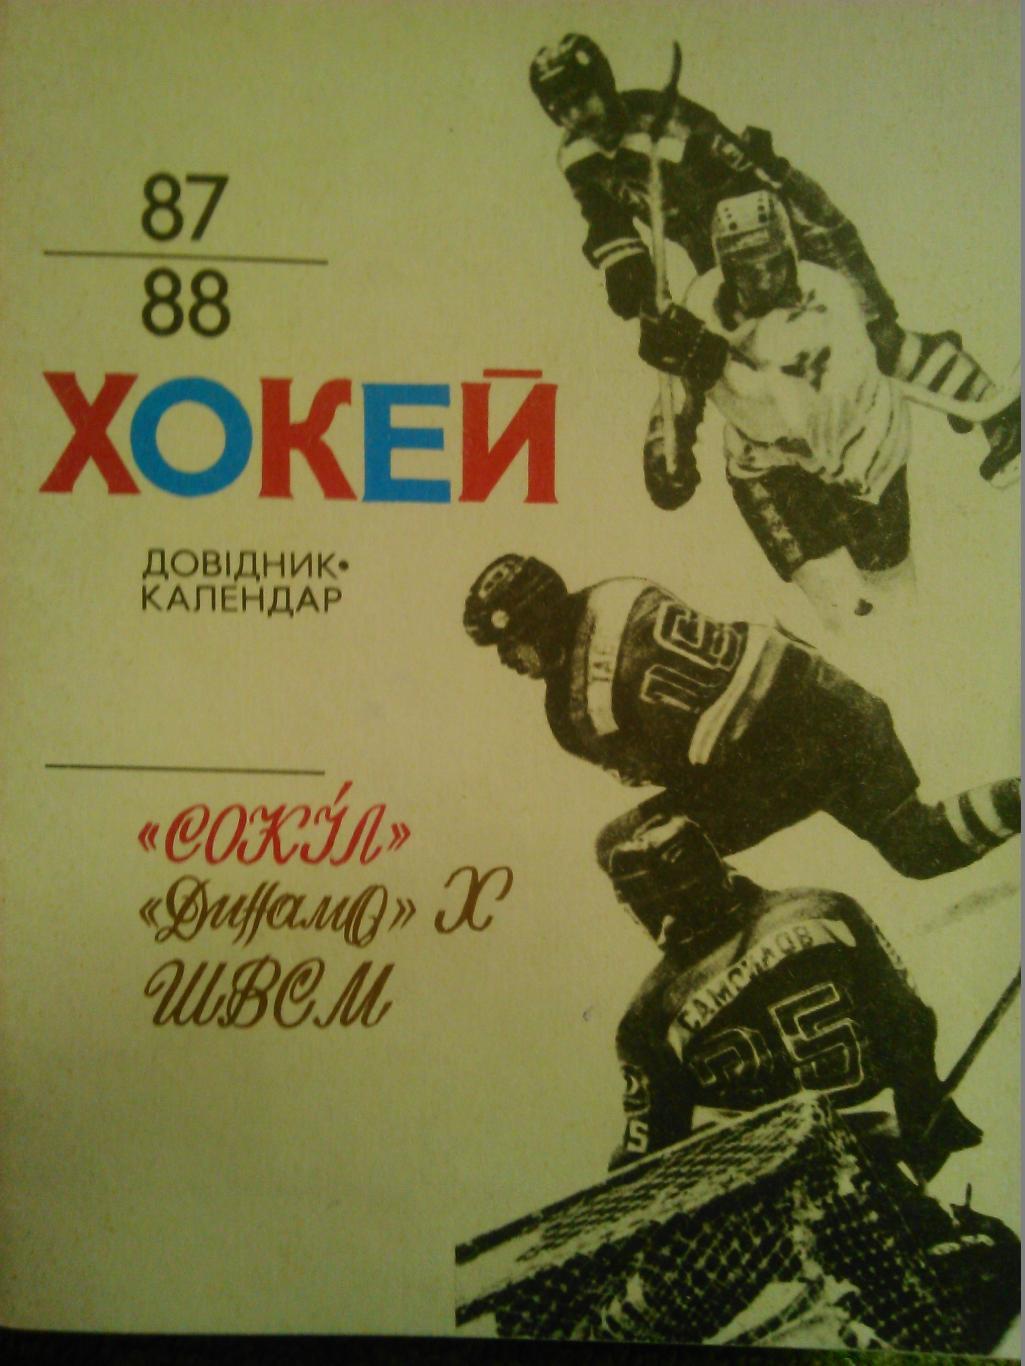 хоккей 1987-1988. Календарь-справочник. Киев